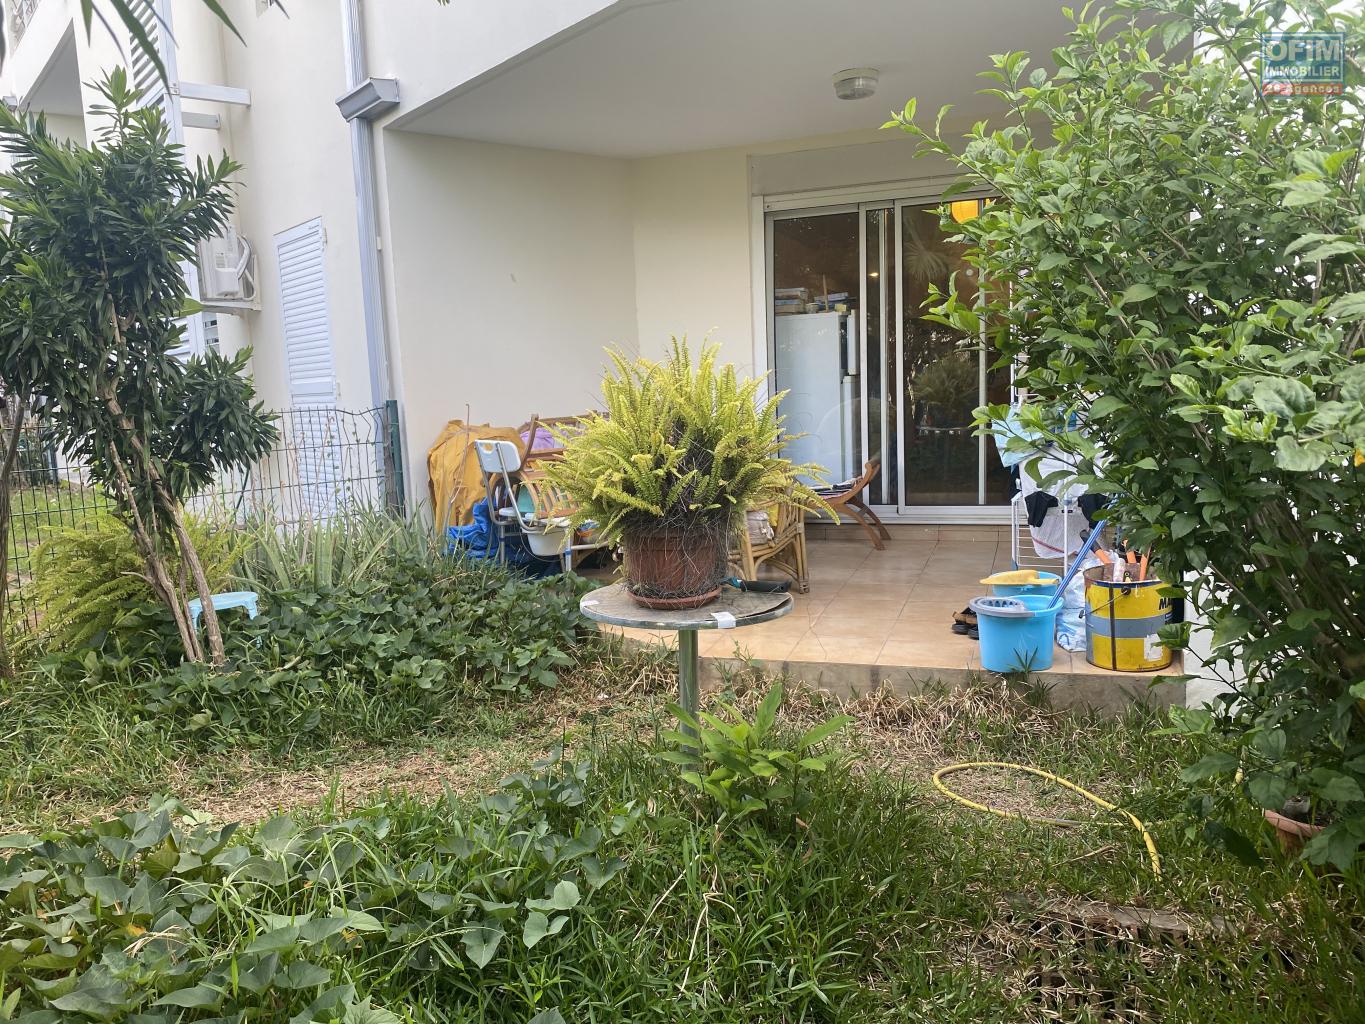 OFIM-Réunion-en-vente-un-appartement-T2-avec-jardin-varangue-situé-dans-une-résidence-sécurisée-à-ouest-Possession